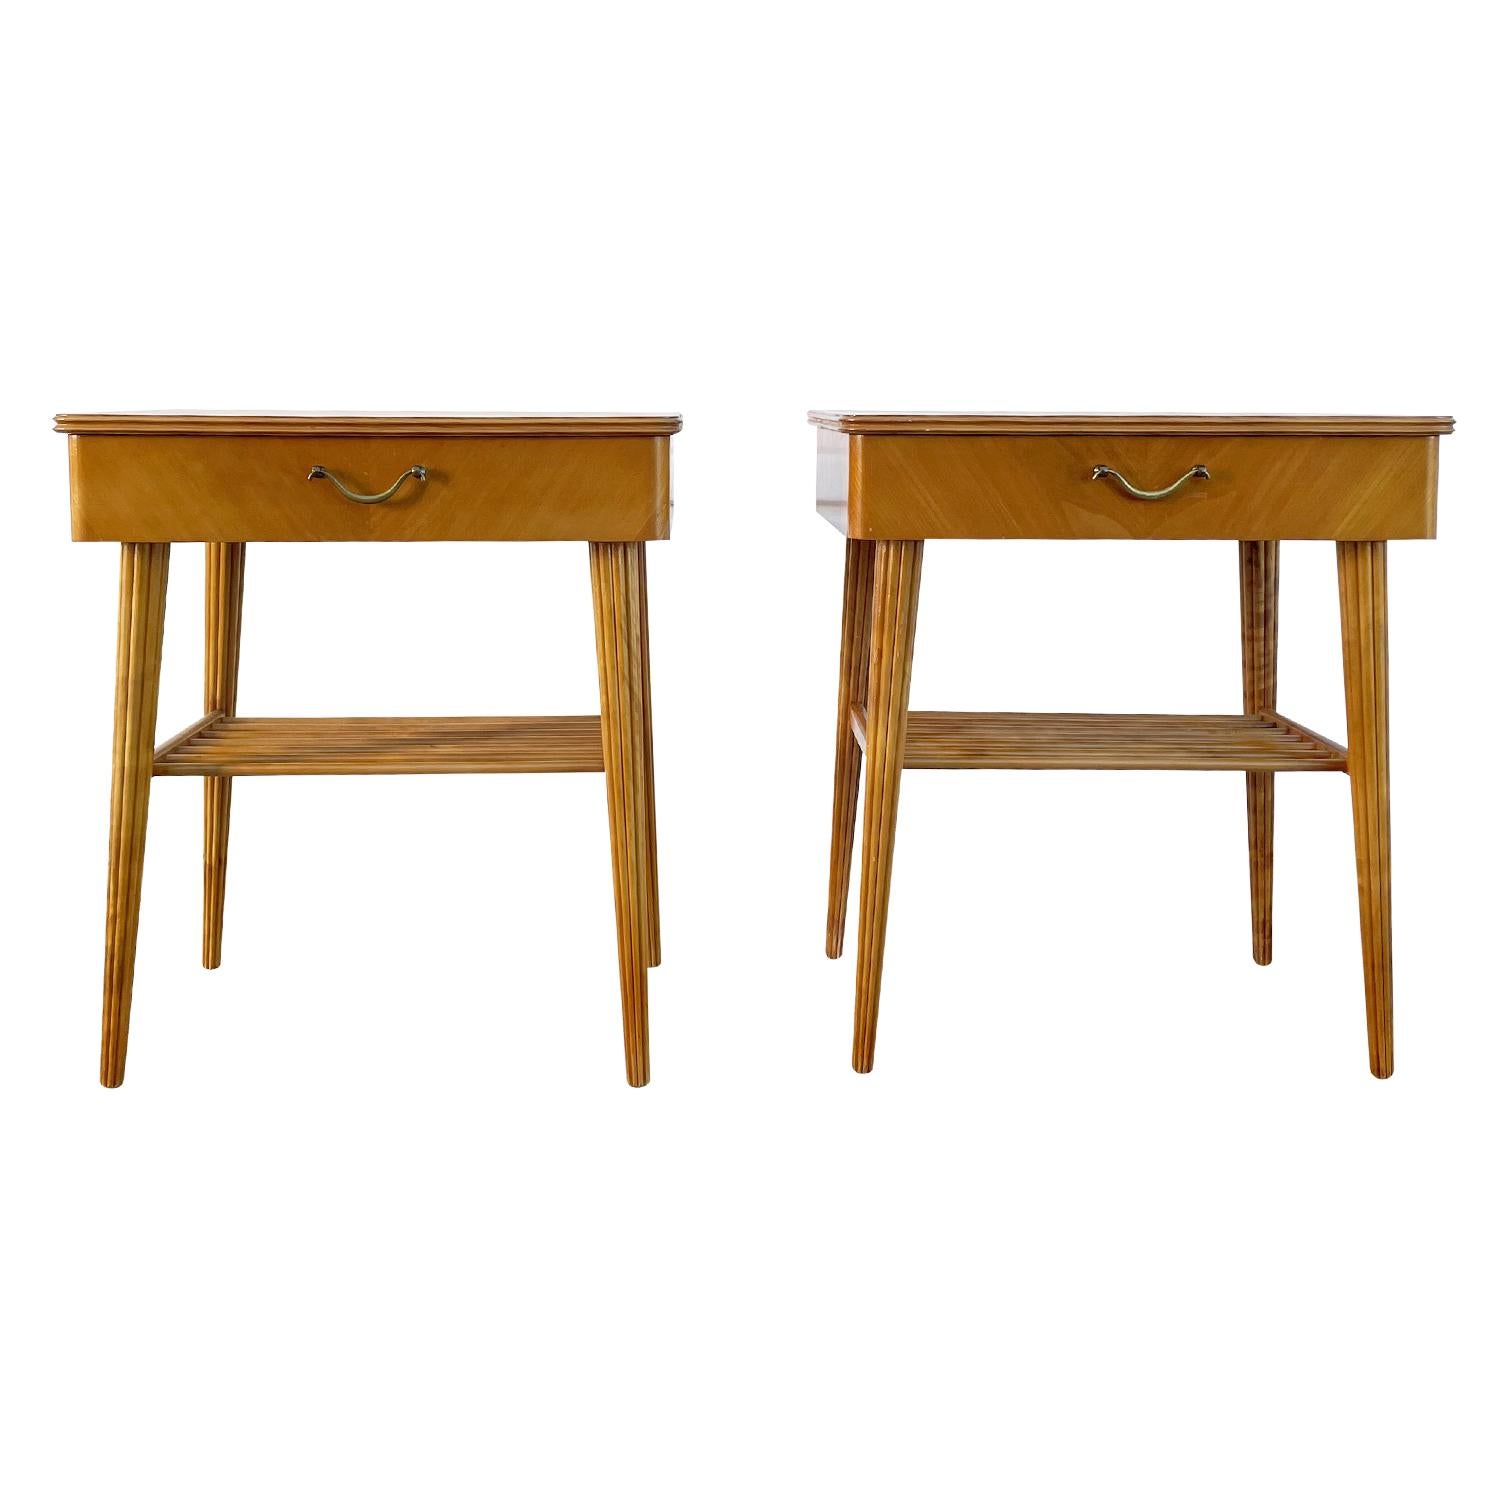 Paire de tables de nuit danoise vintage en bois de bouleau travaillé à la main, marron clair, en bon état. Chaque table de chevet scandinave est composée d'un tiroir, d'une poignée en laiton et d'une étagère en fuseau, soutenue par quatre pieds en